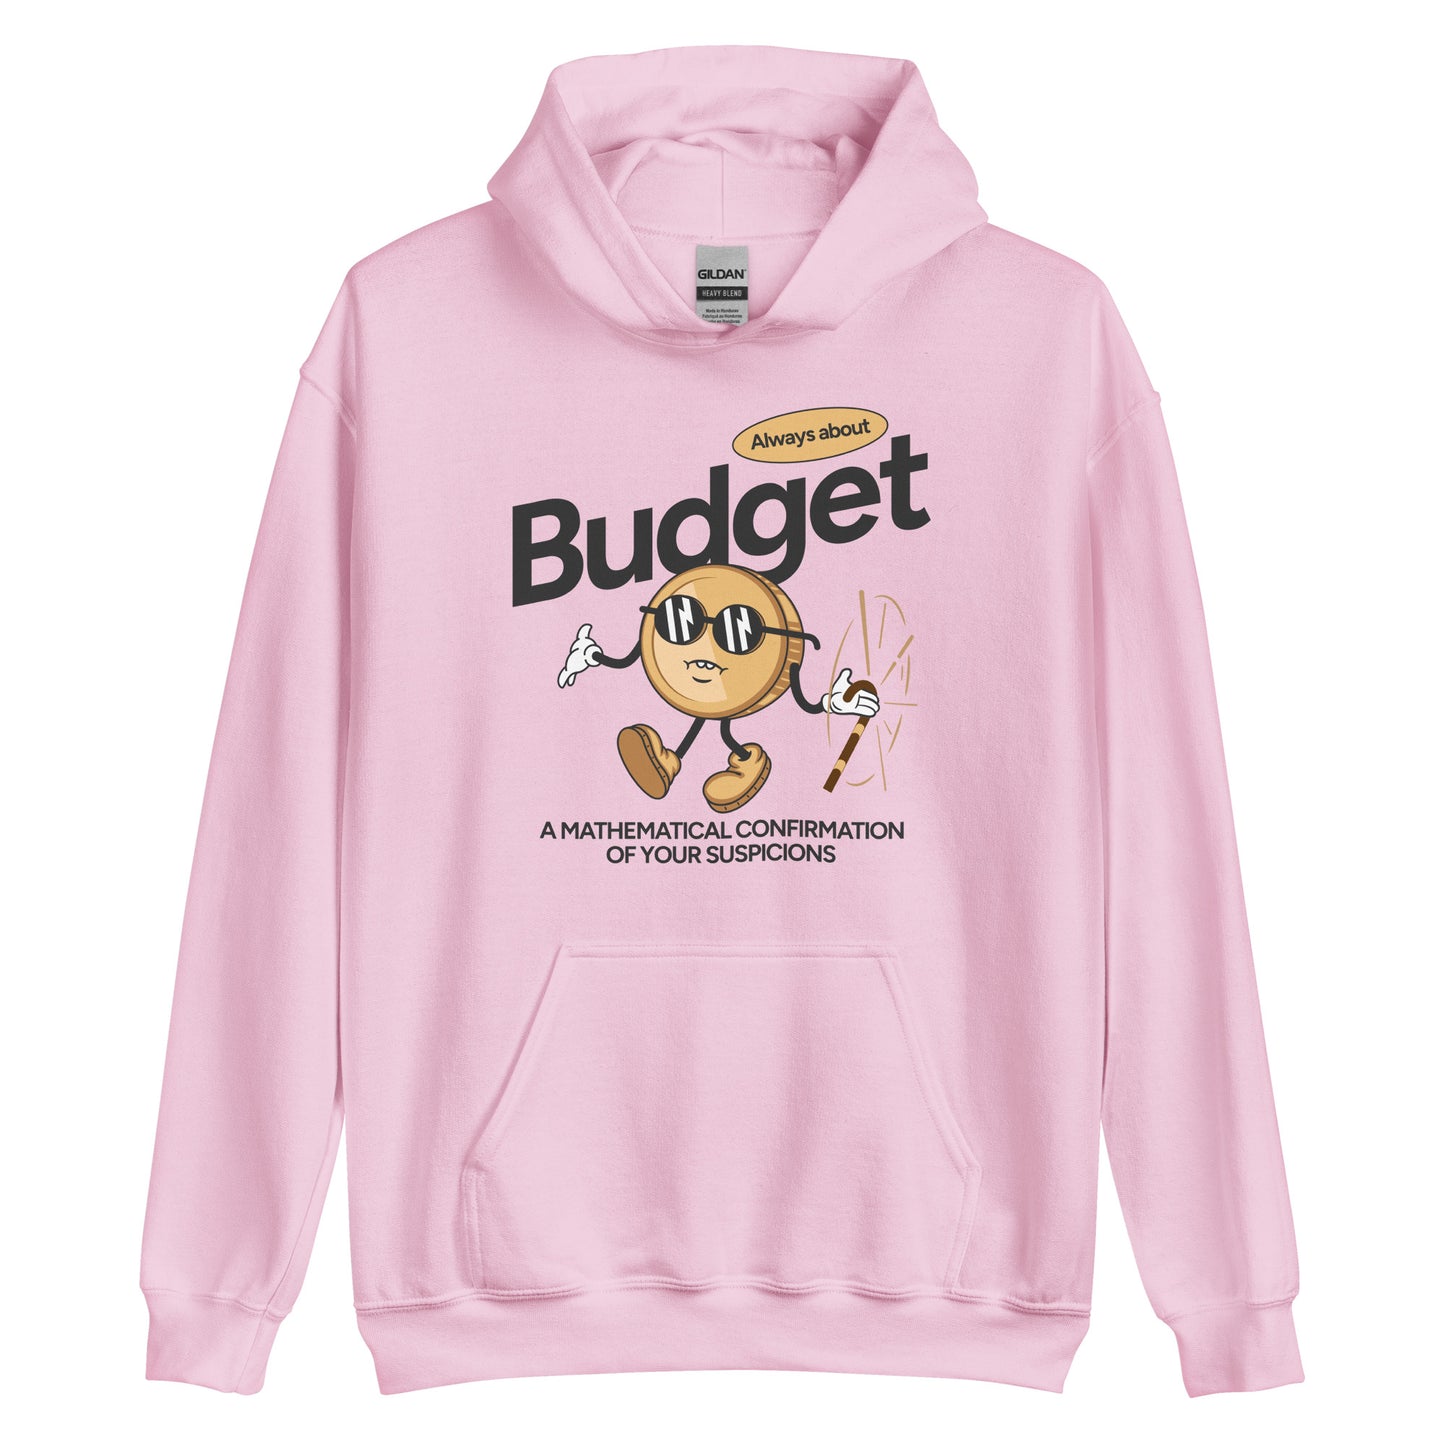 Money Man Budget Mascot Hoodie